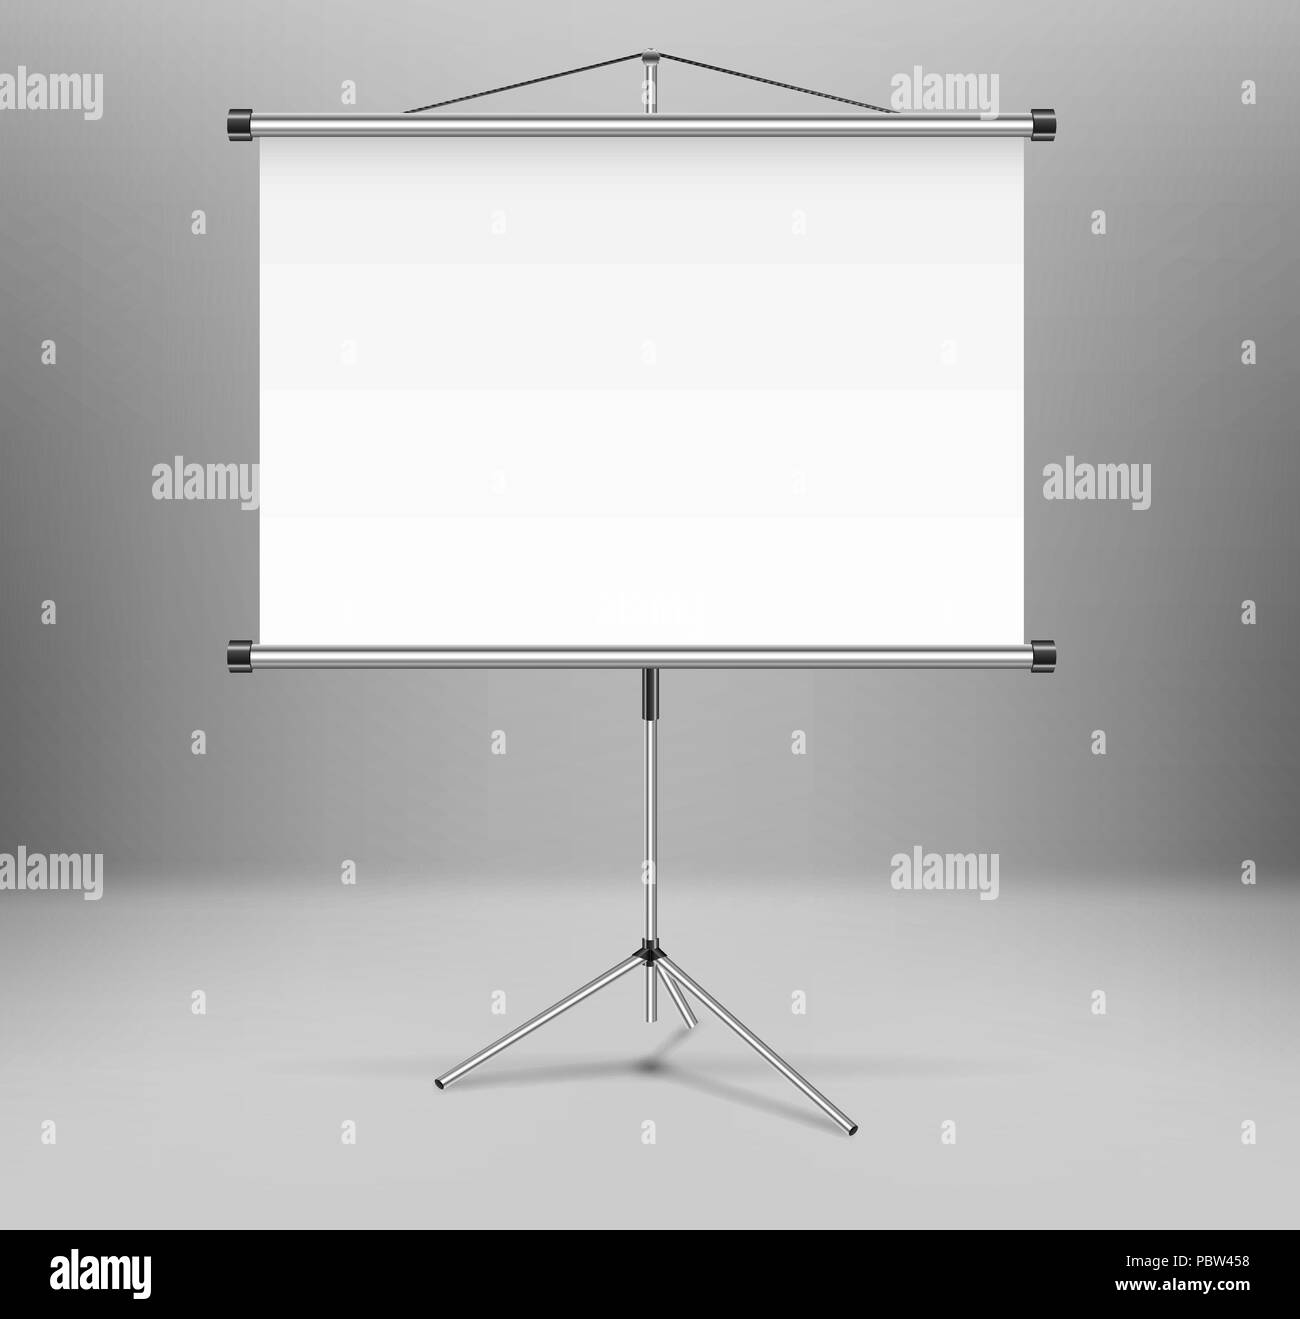 Pantalla del proyector fotografías e imágenes de alta resolución - Alamy